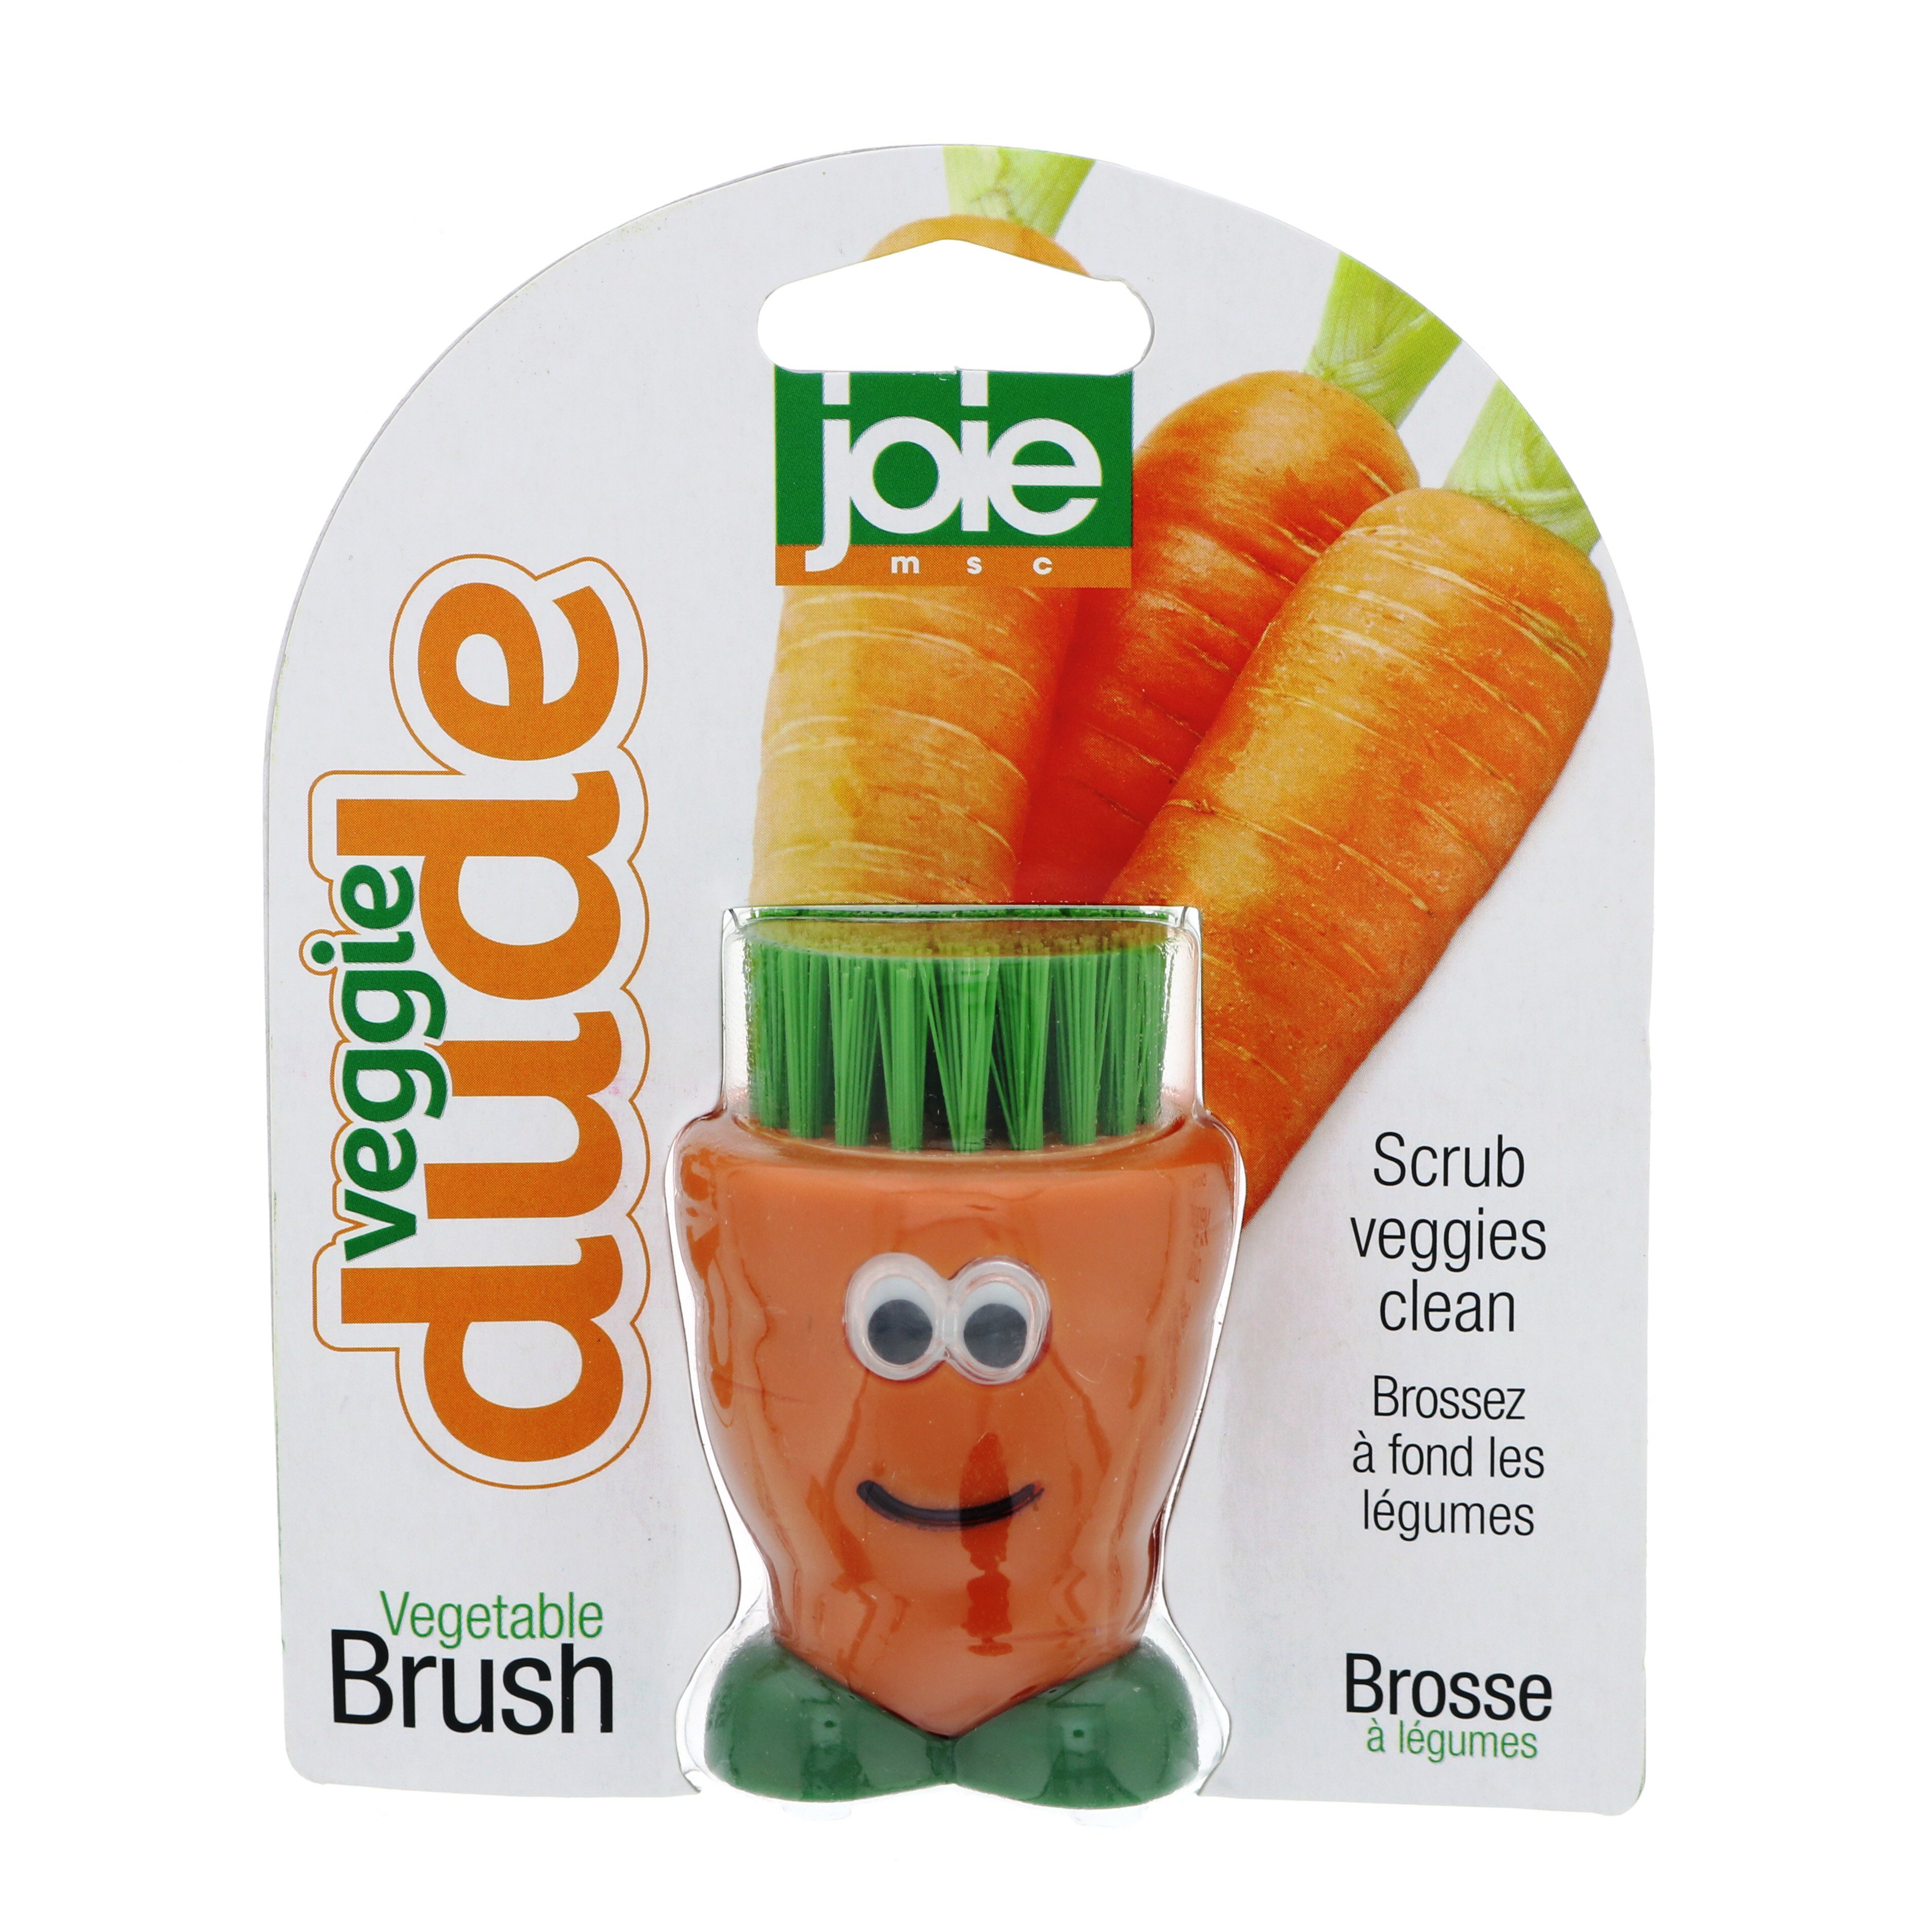 Joie Spud Dude Potato Vegetable Scrub Cleaner Brush